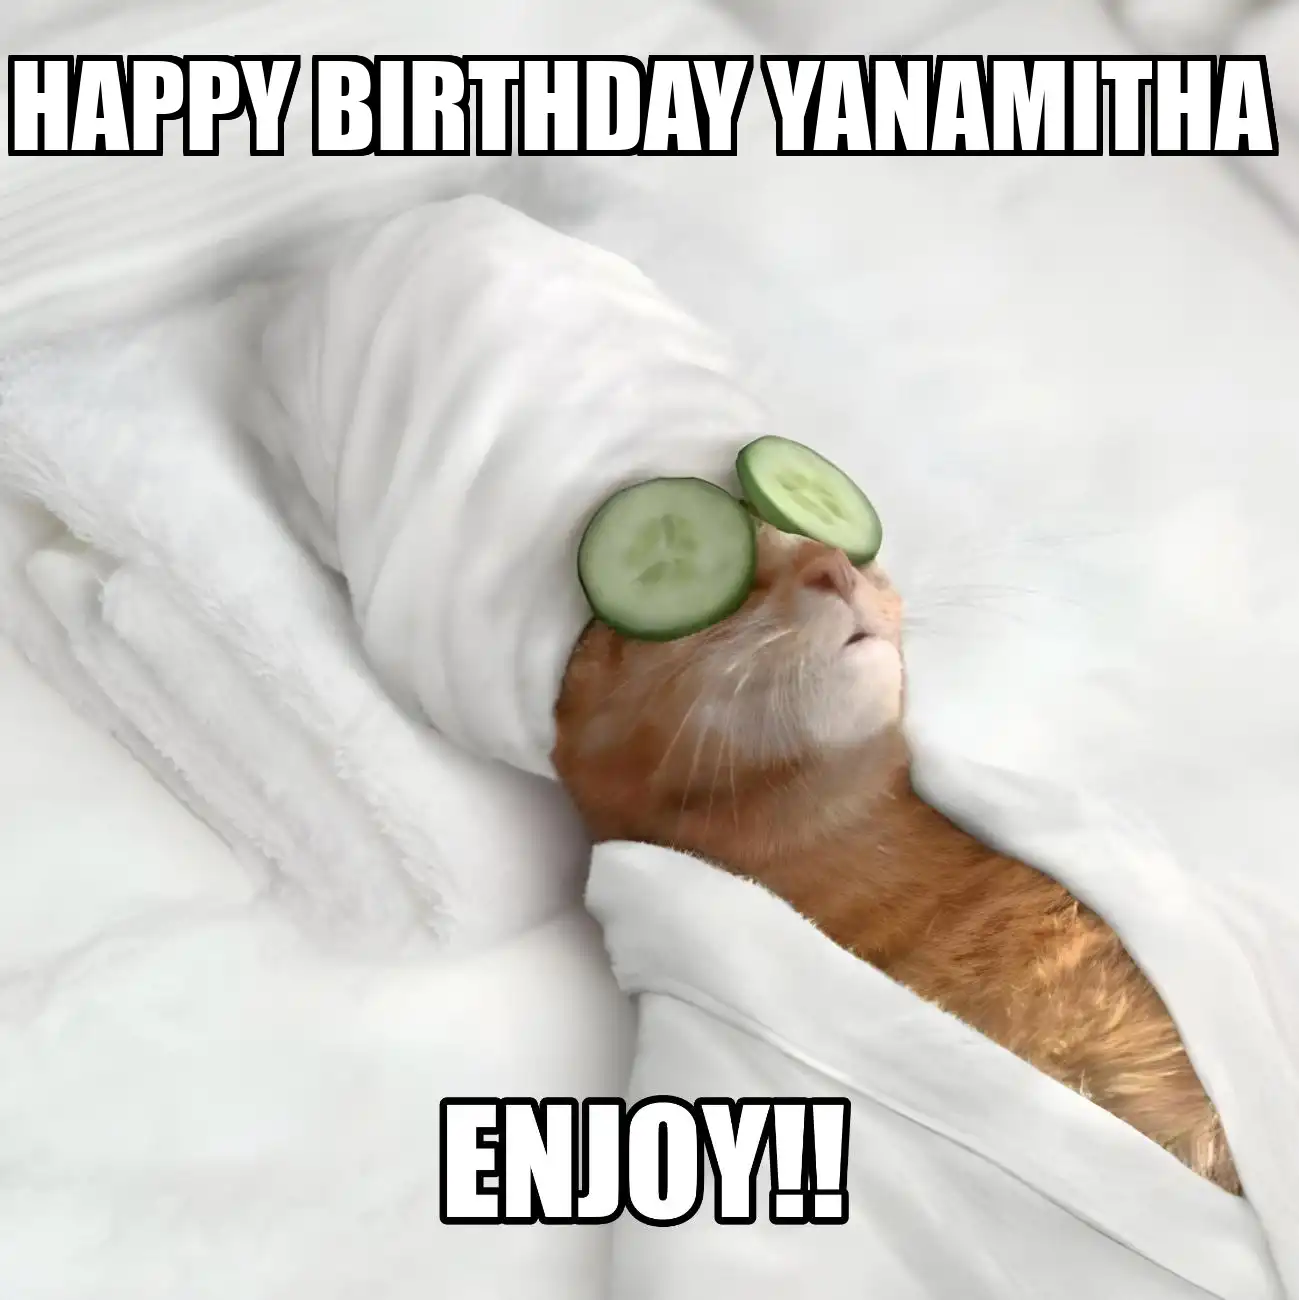 Happy Birthday Yanamitha Enjoy Cat Meme